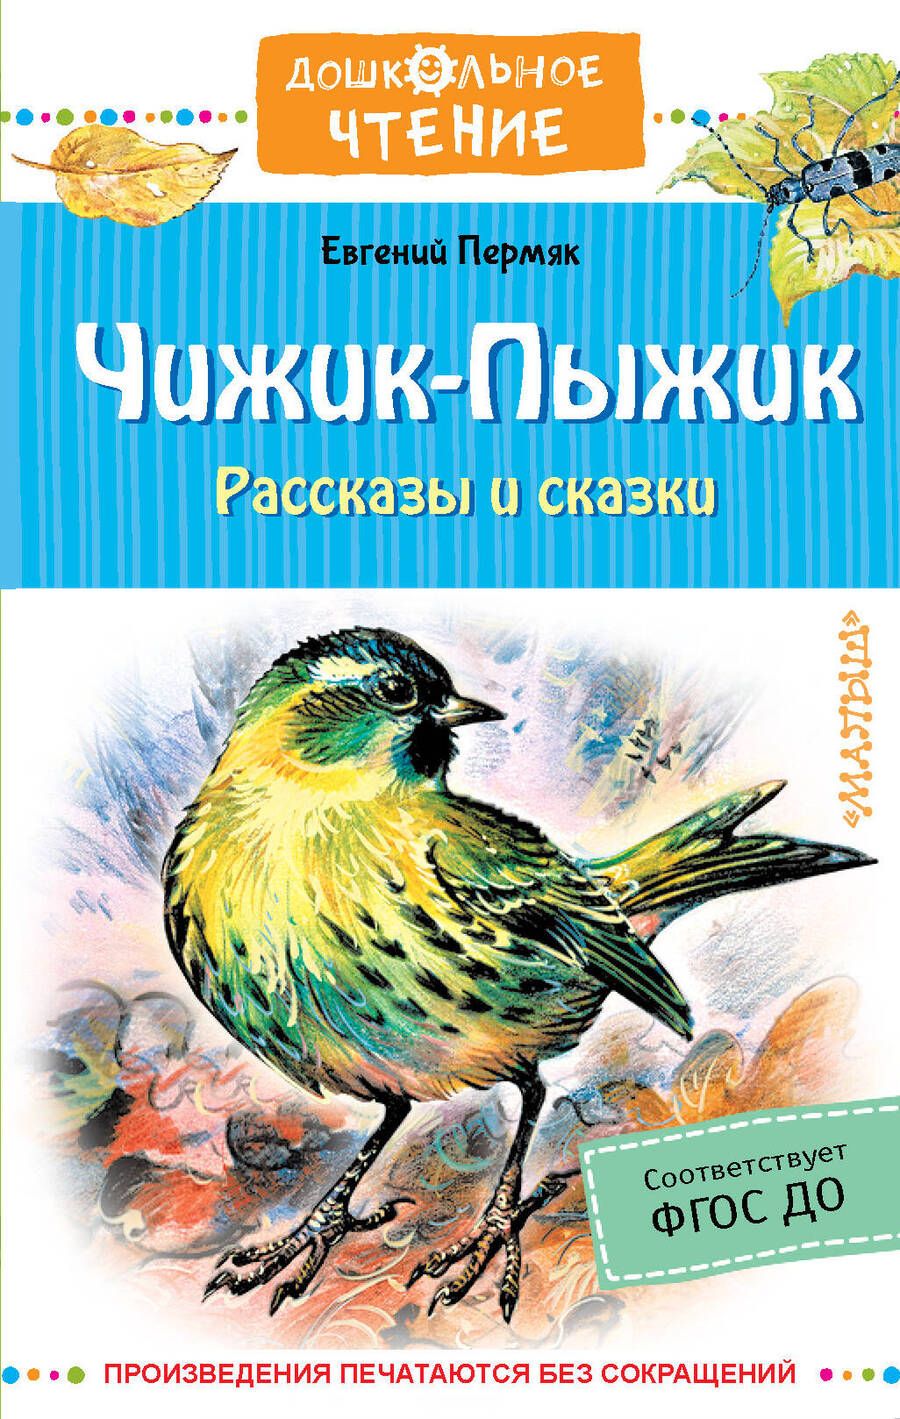 Обложка книги "Евгений Пермяк: Чижик-Пыжик. Рассказы и сказки"